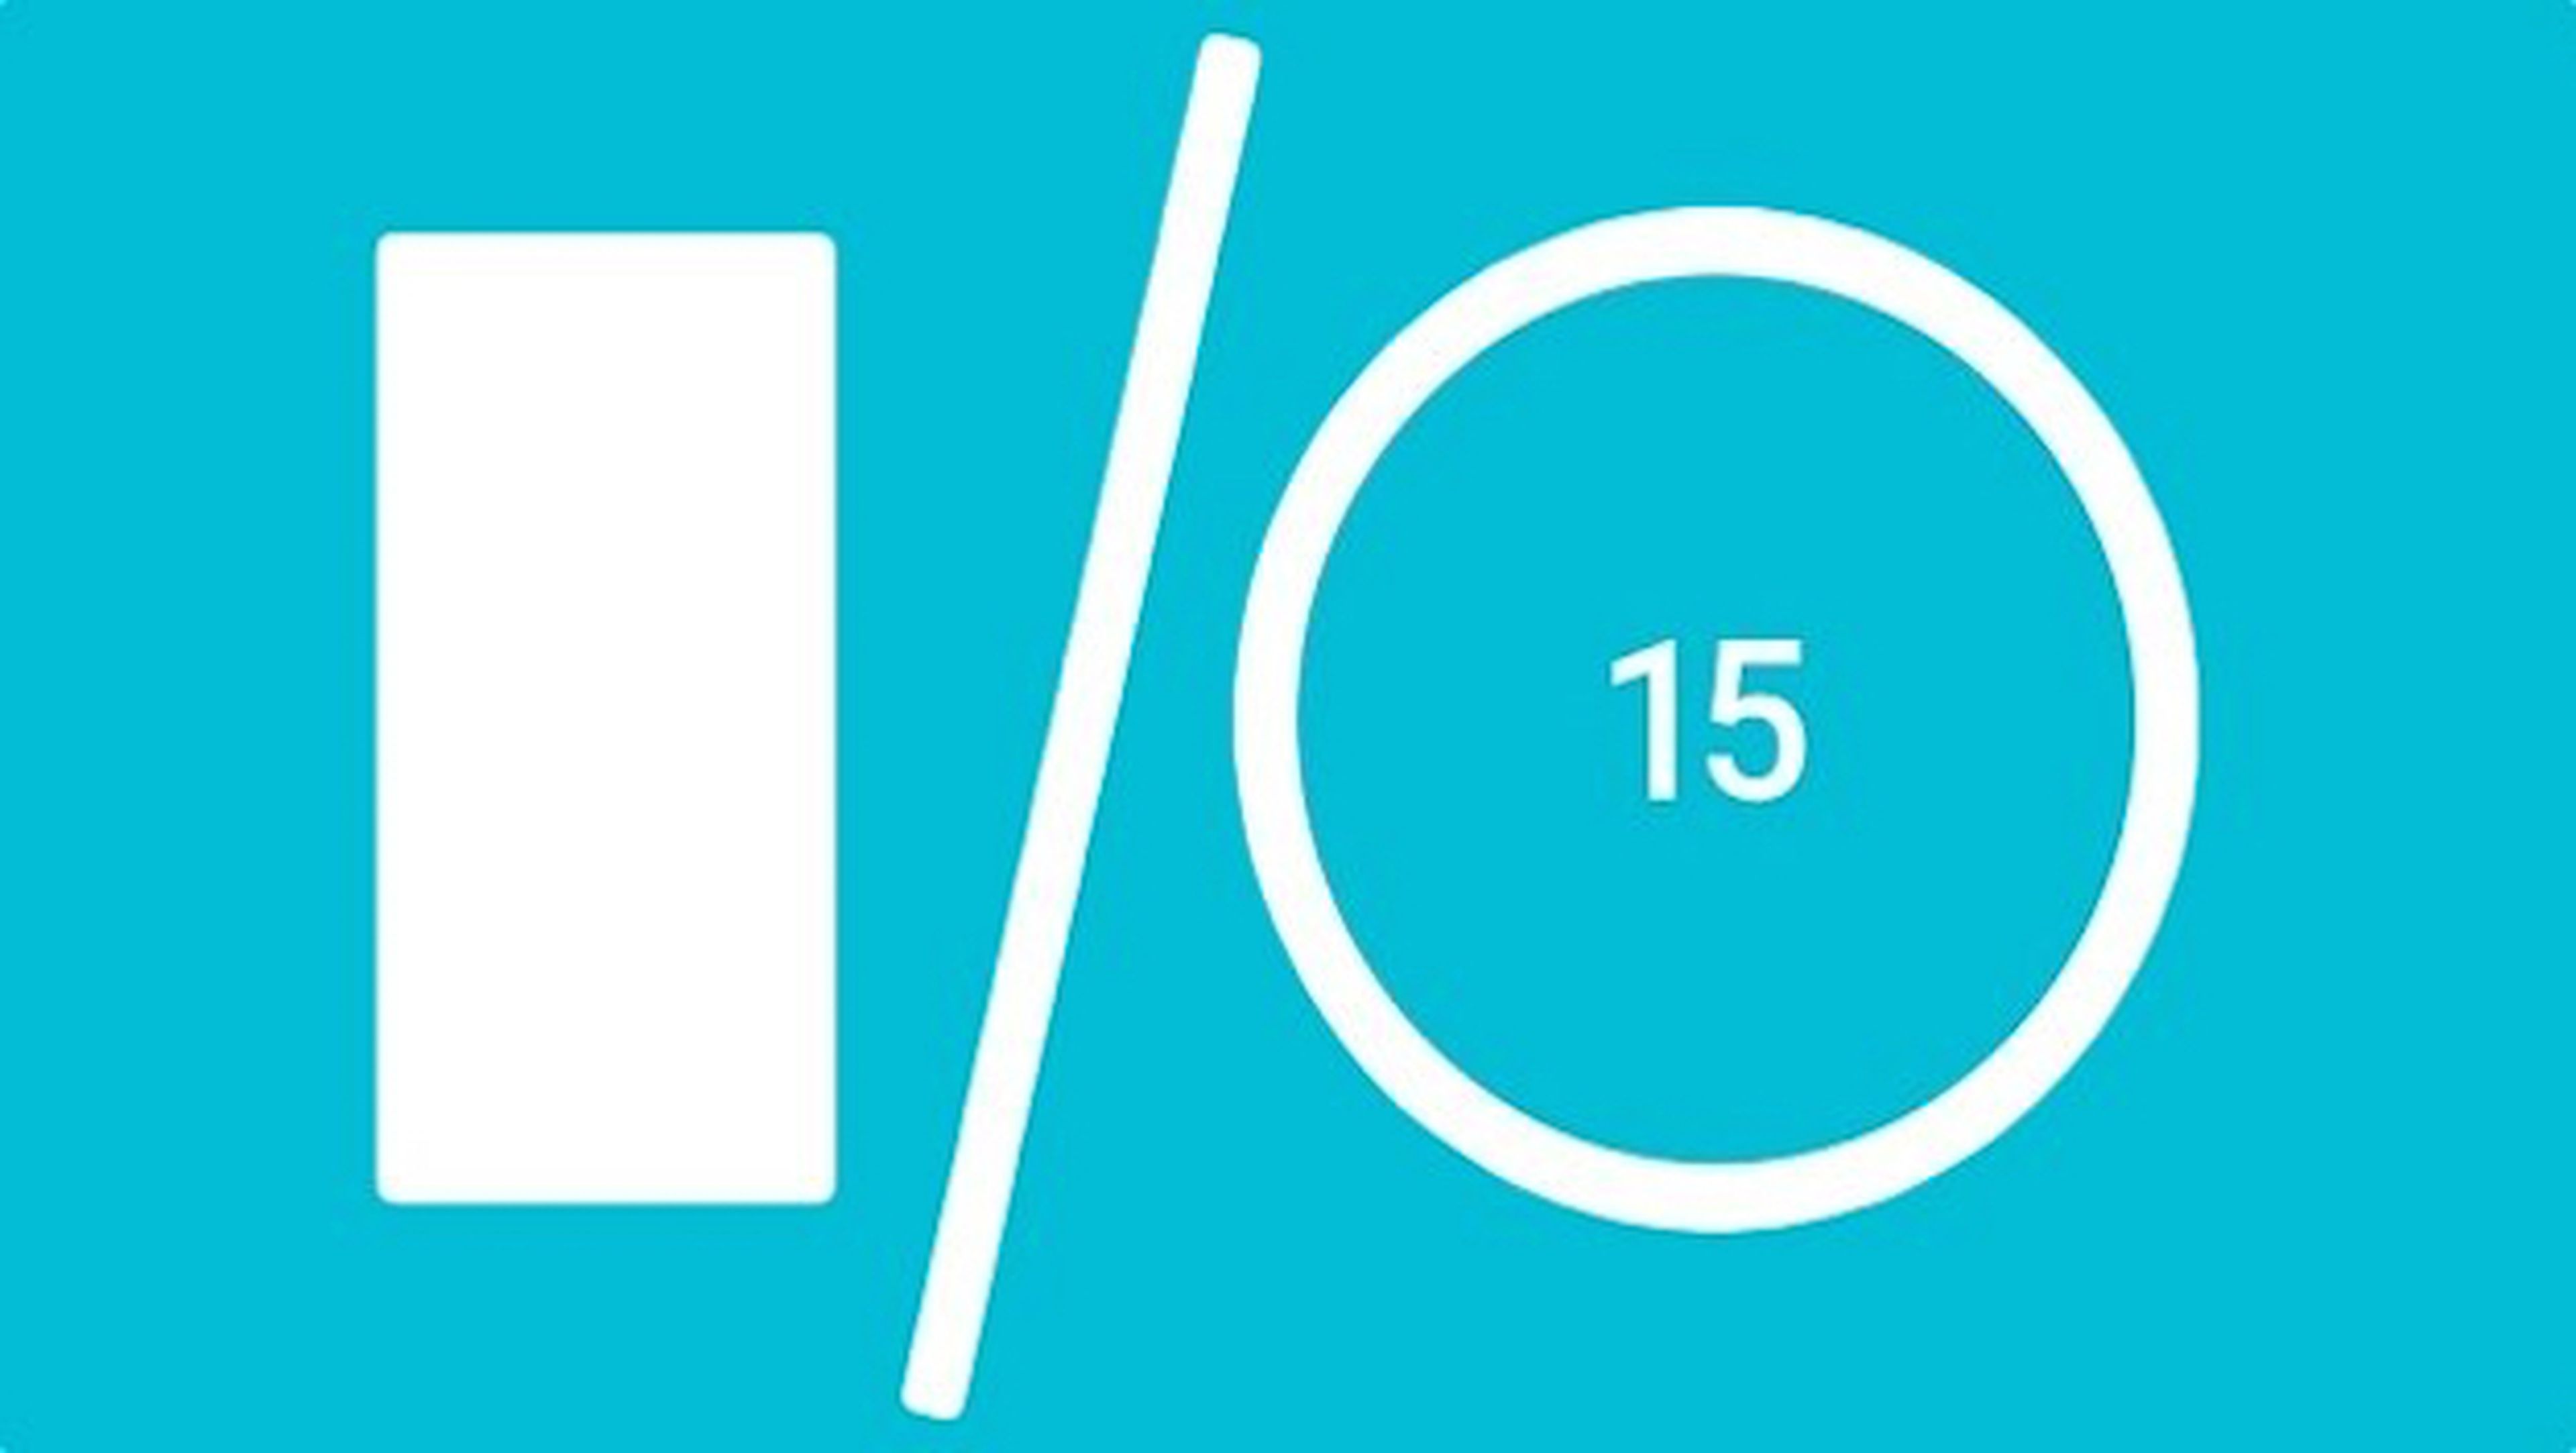 Android M sería presentado el 28 de mayo en Google I/O 2015